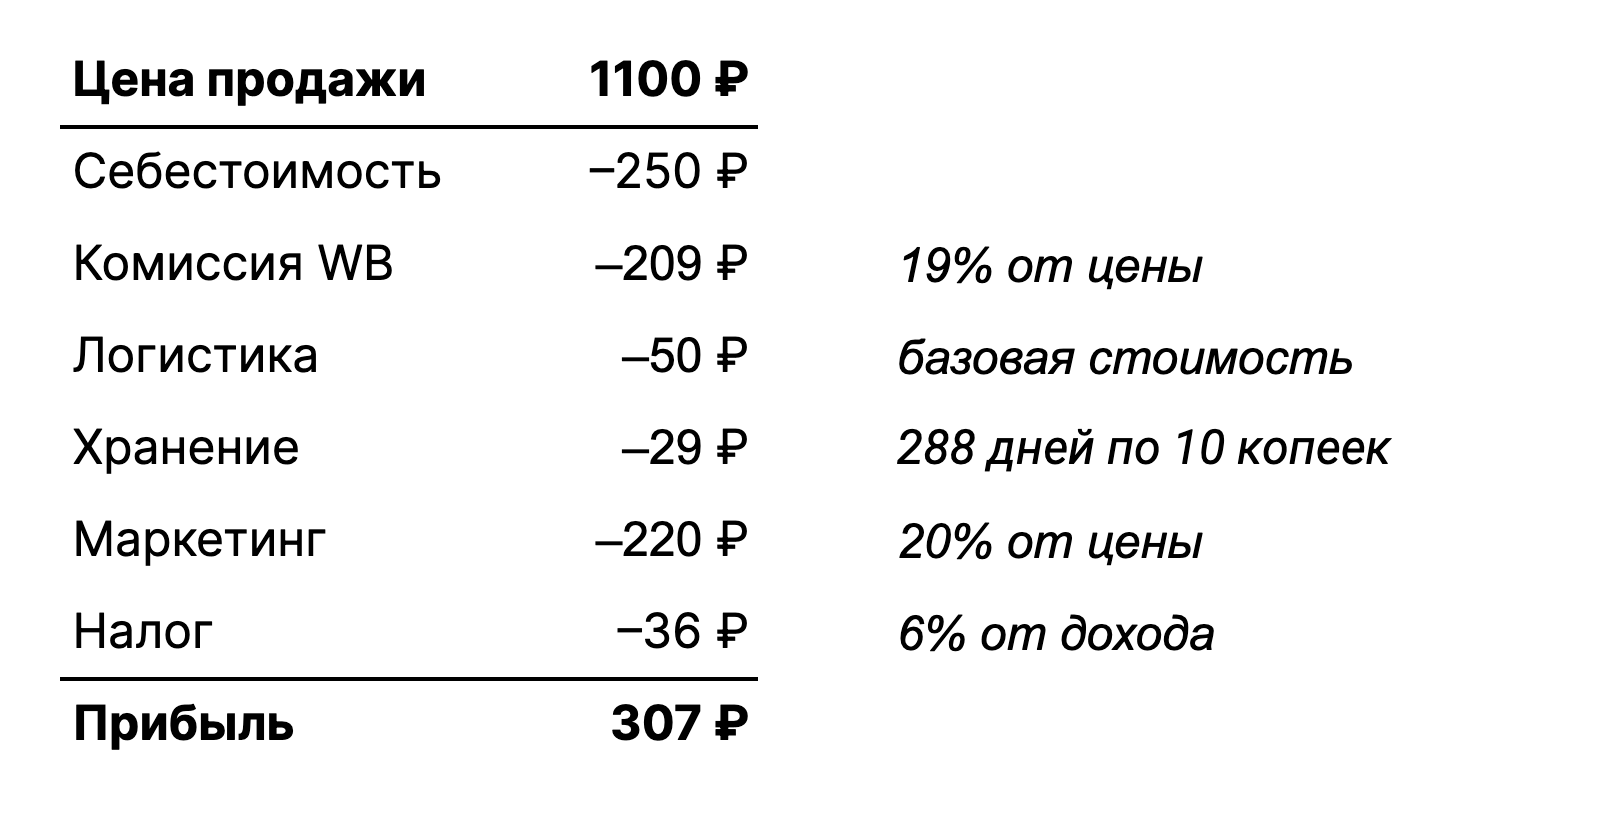 Расчёт цены и прибыли для скатерти в премиум-сегменте